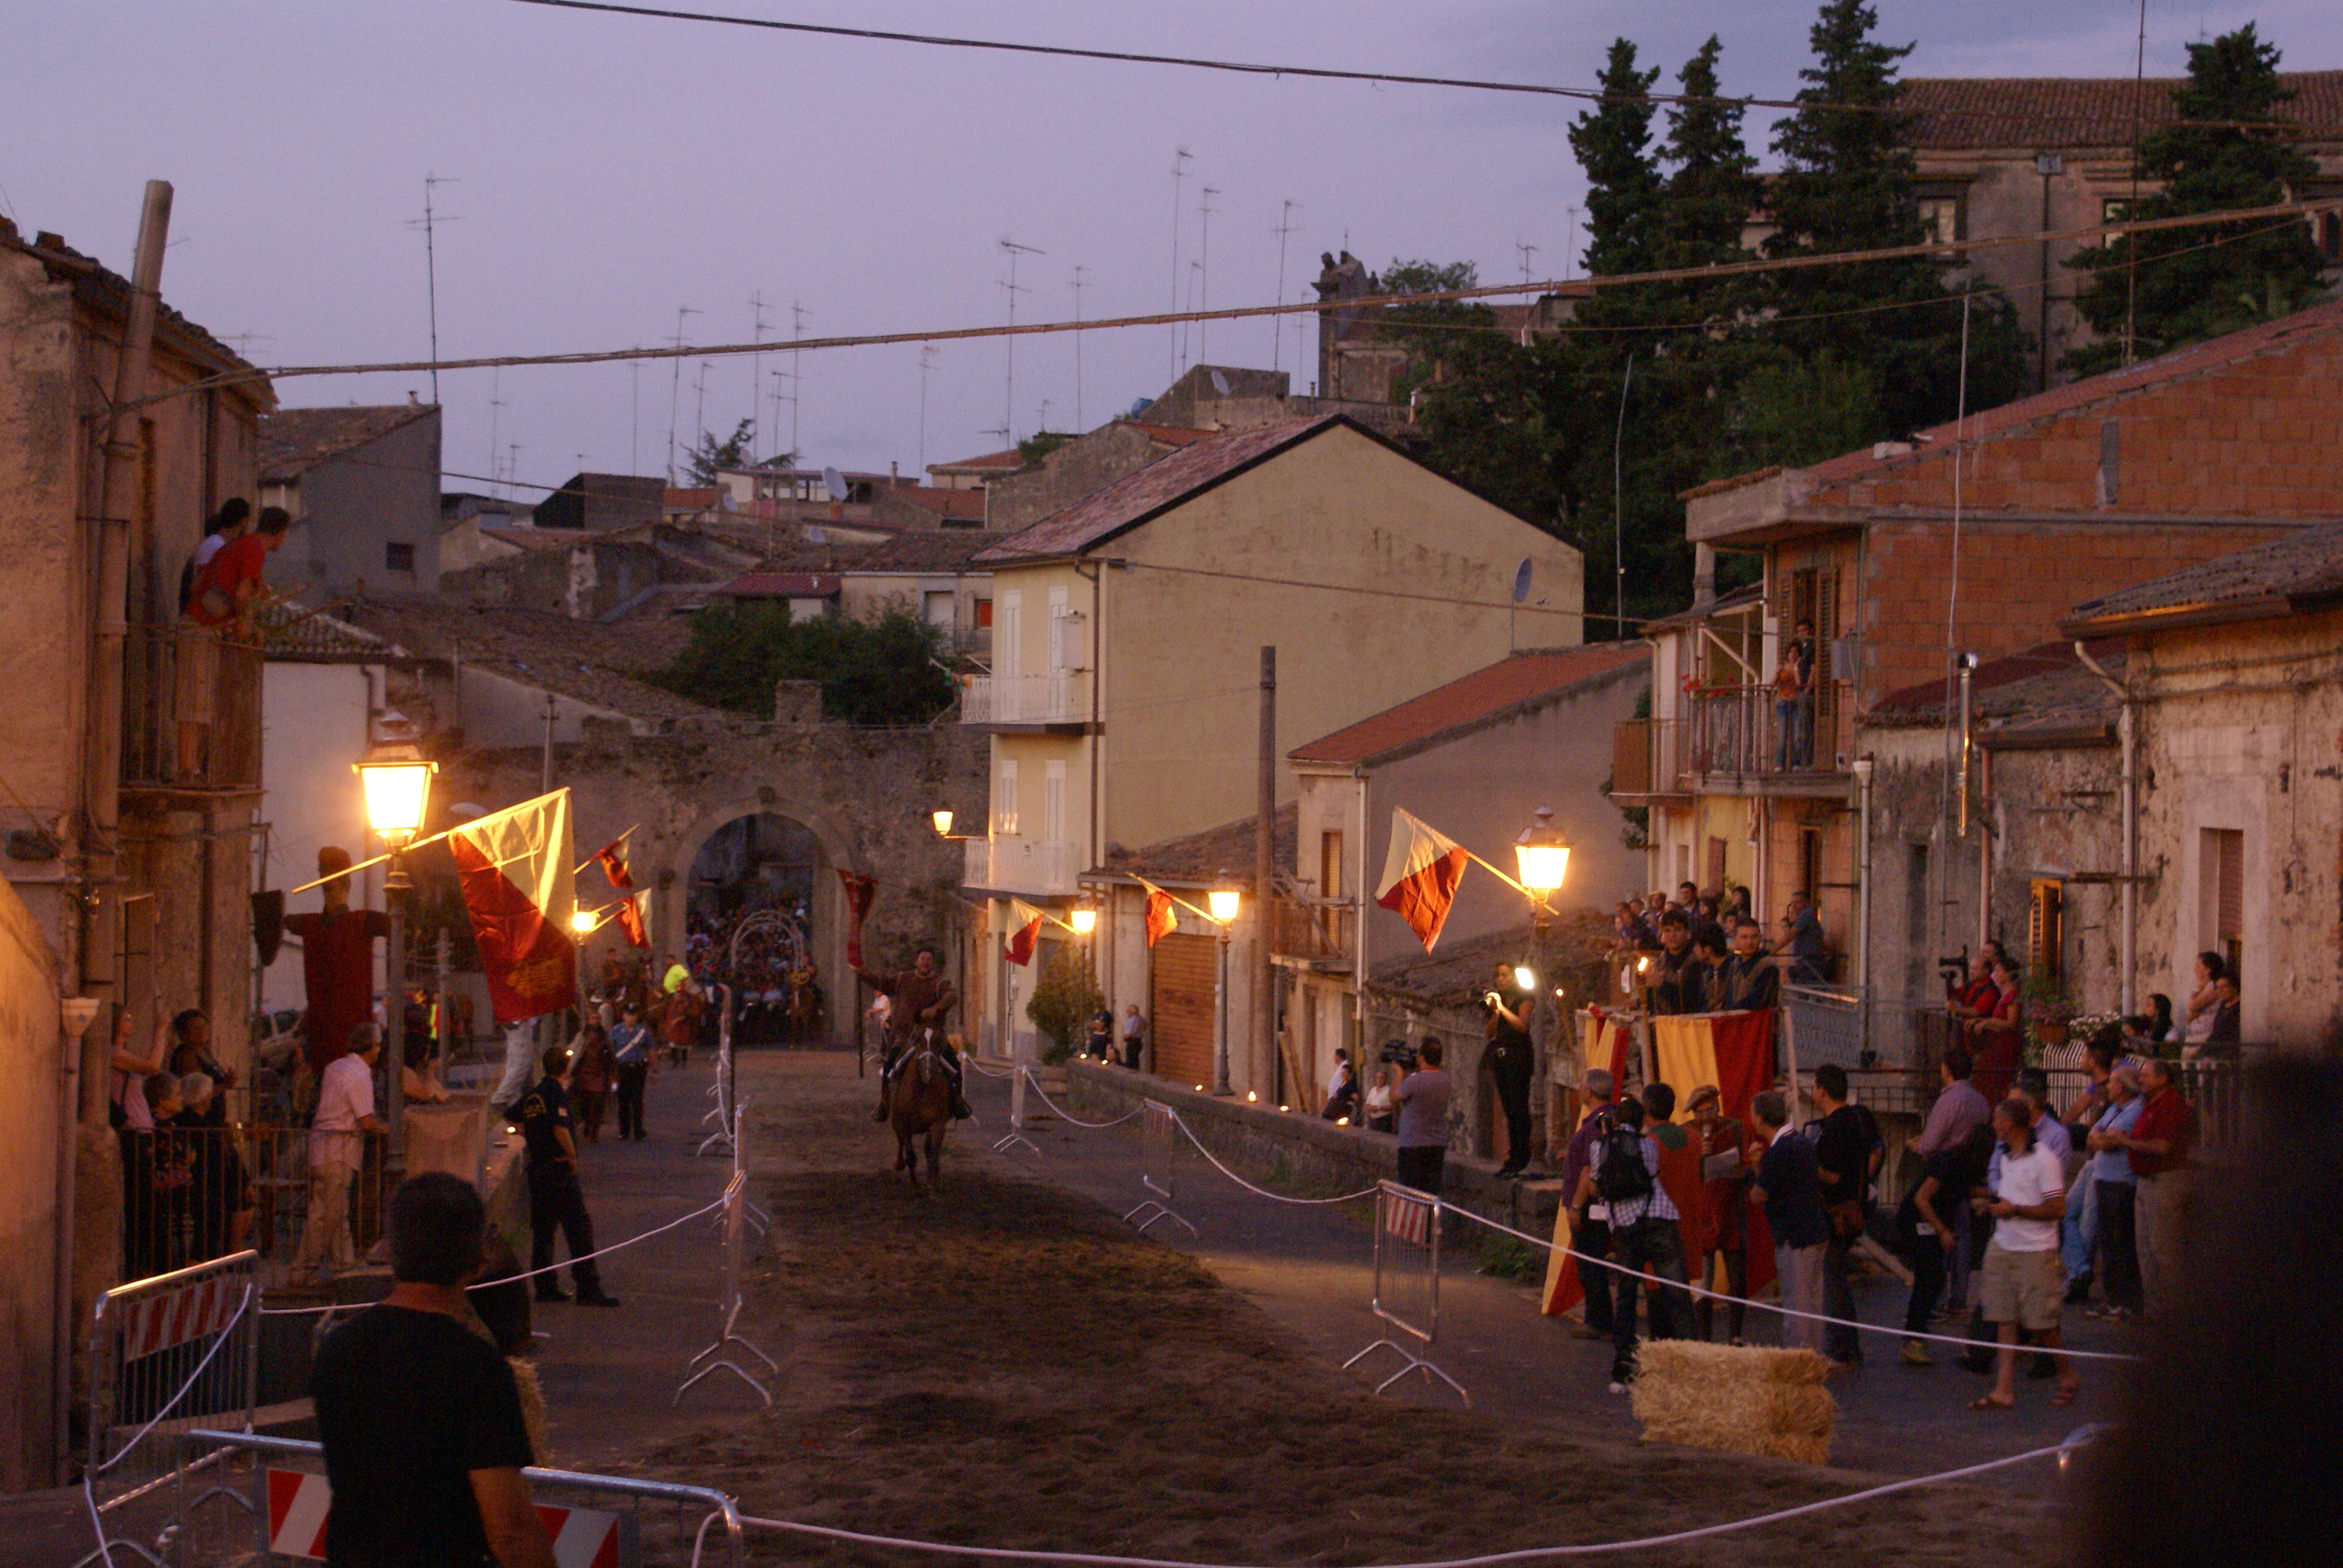 Festa Medievale di Randazzo (Ct). Torneo al tramonto.